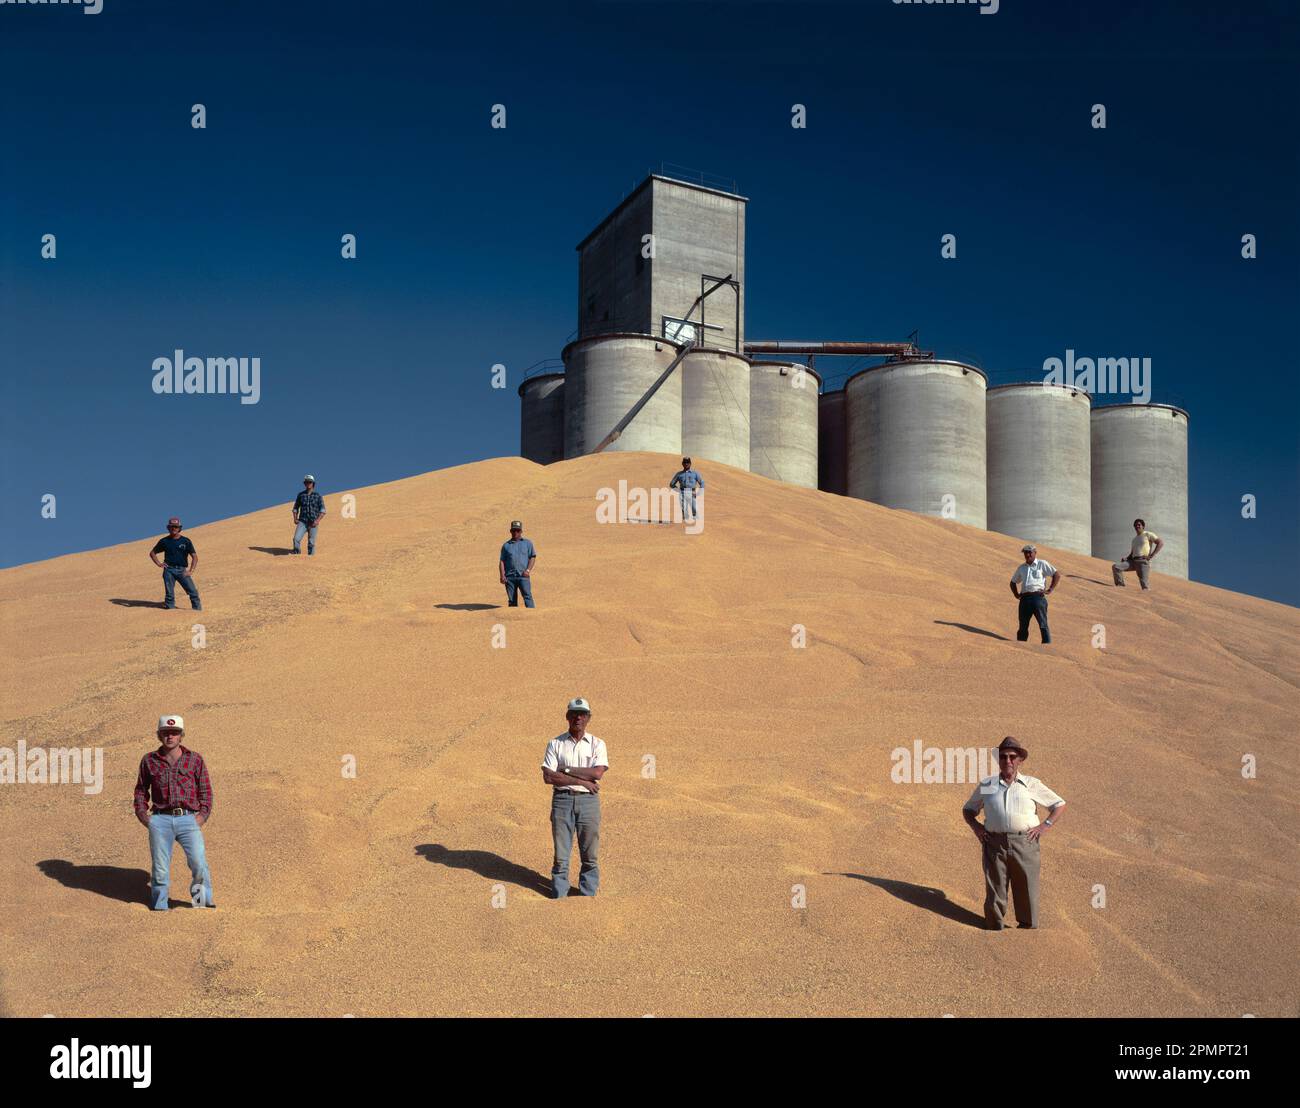 Los agricultores están de pie en una excelente cosecha de trigo cerca de silos de almacenamiento. Foto de stock